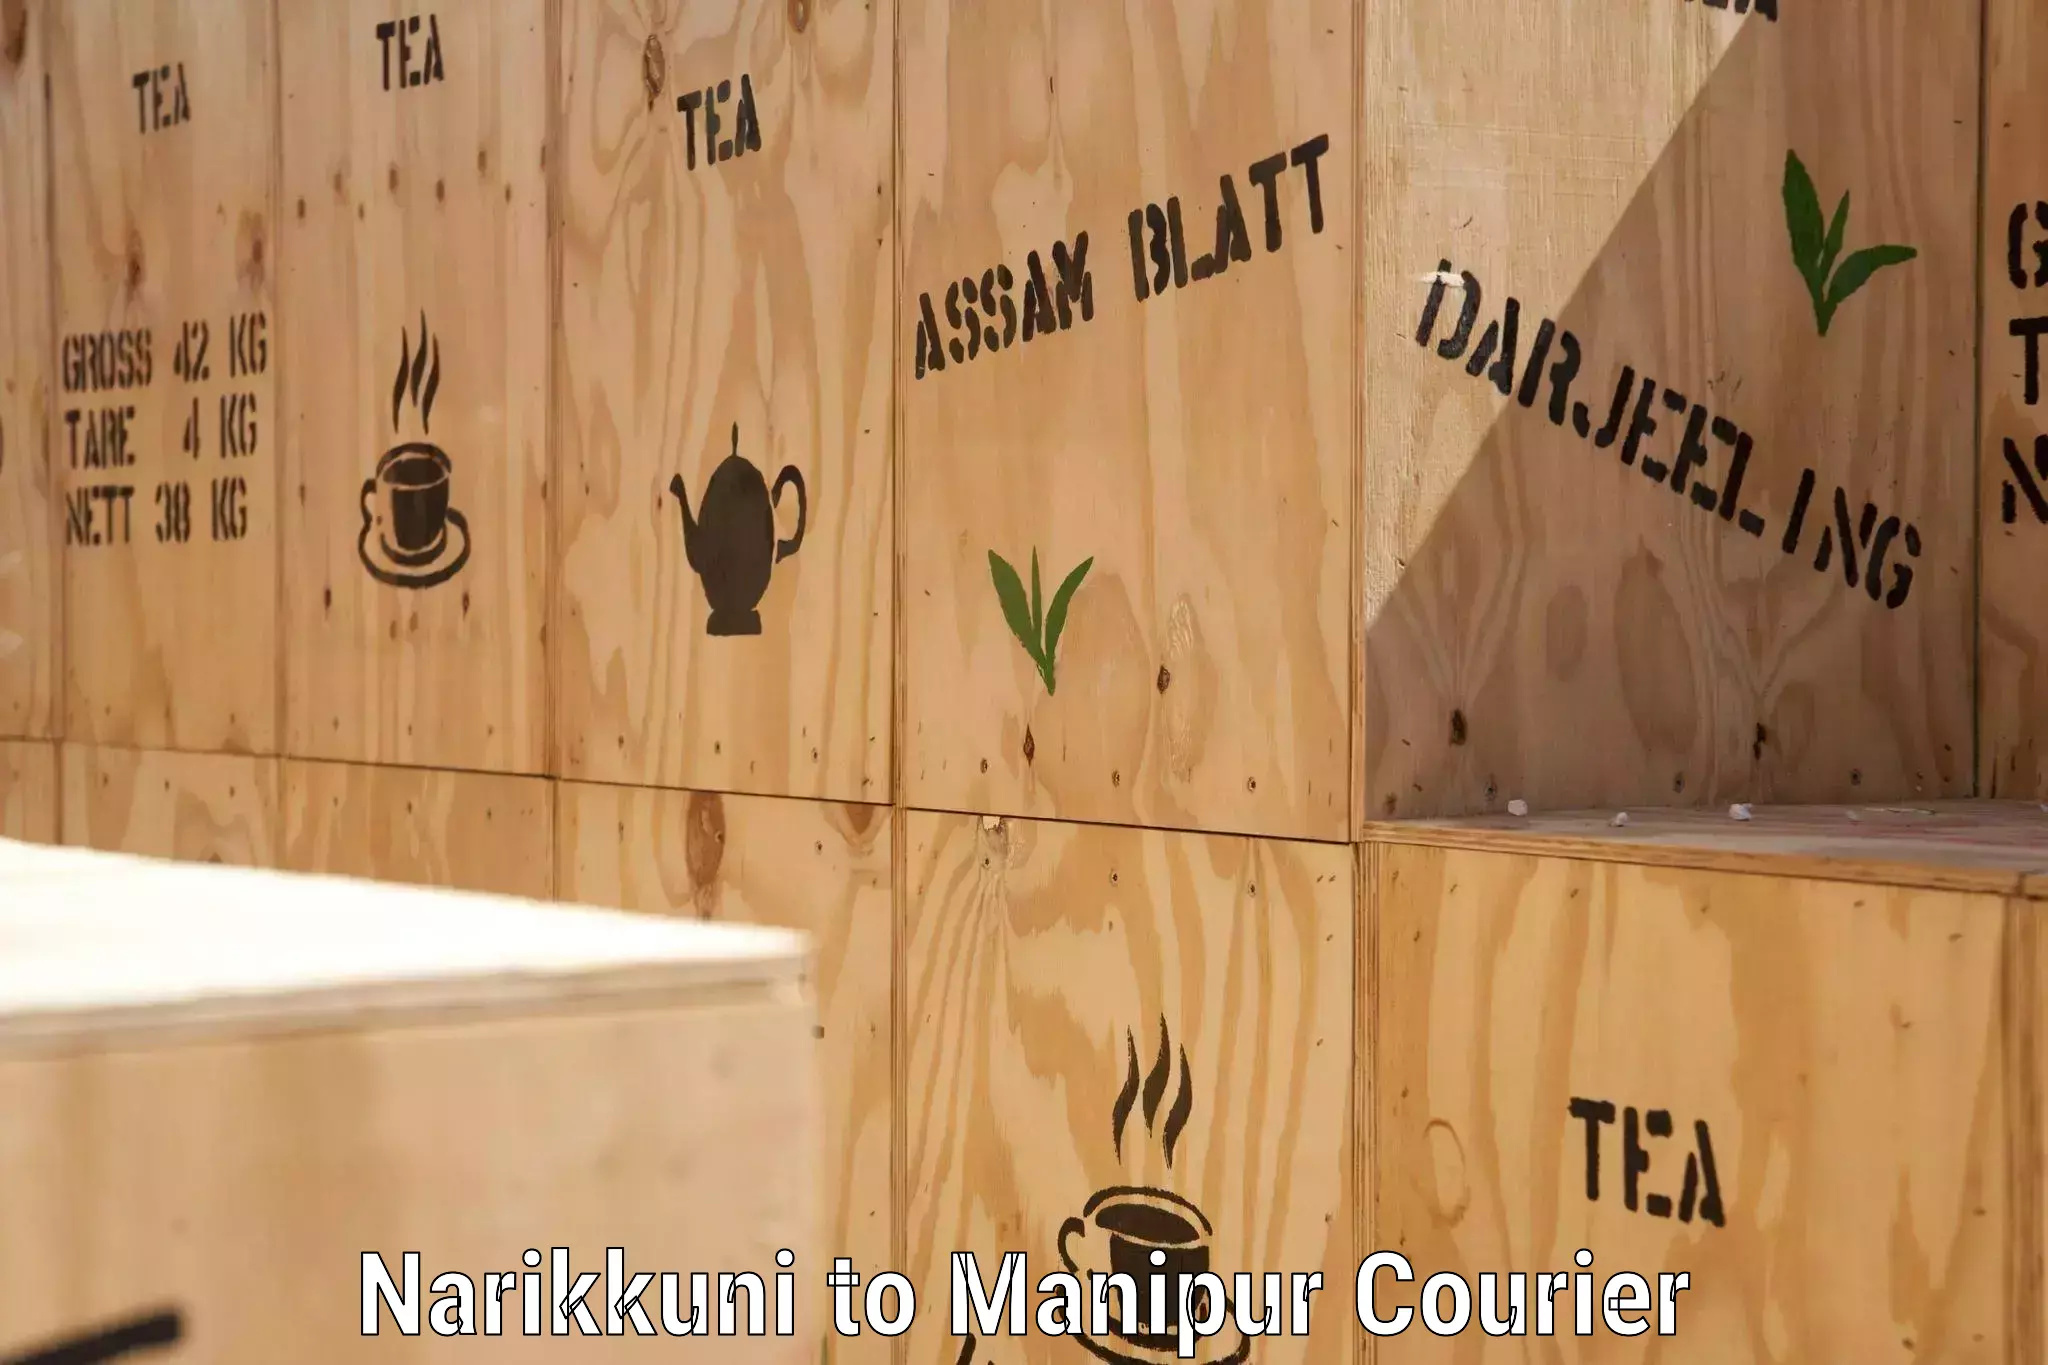 Global shipping solutions Narikkuni to Moirang